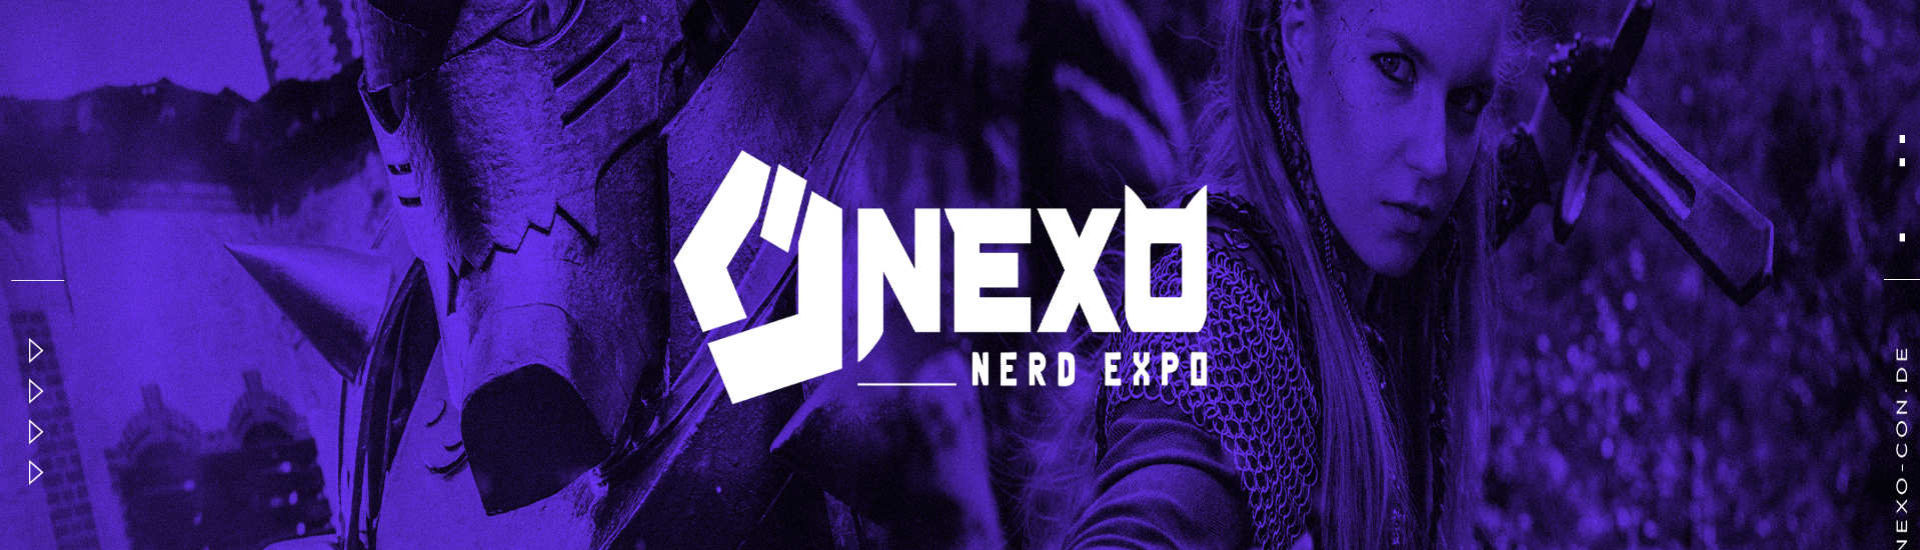 Nerd-Expo verspricht Highlights für Gamer, Cosplayer und Japan-Fans